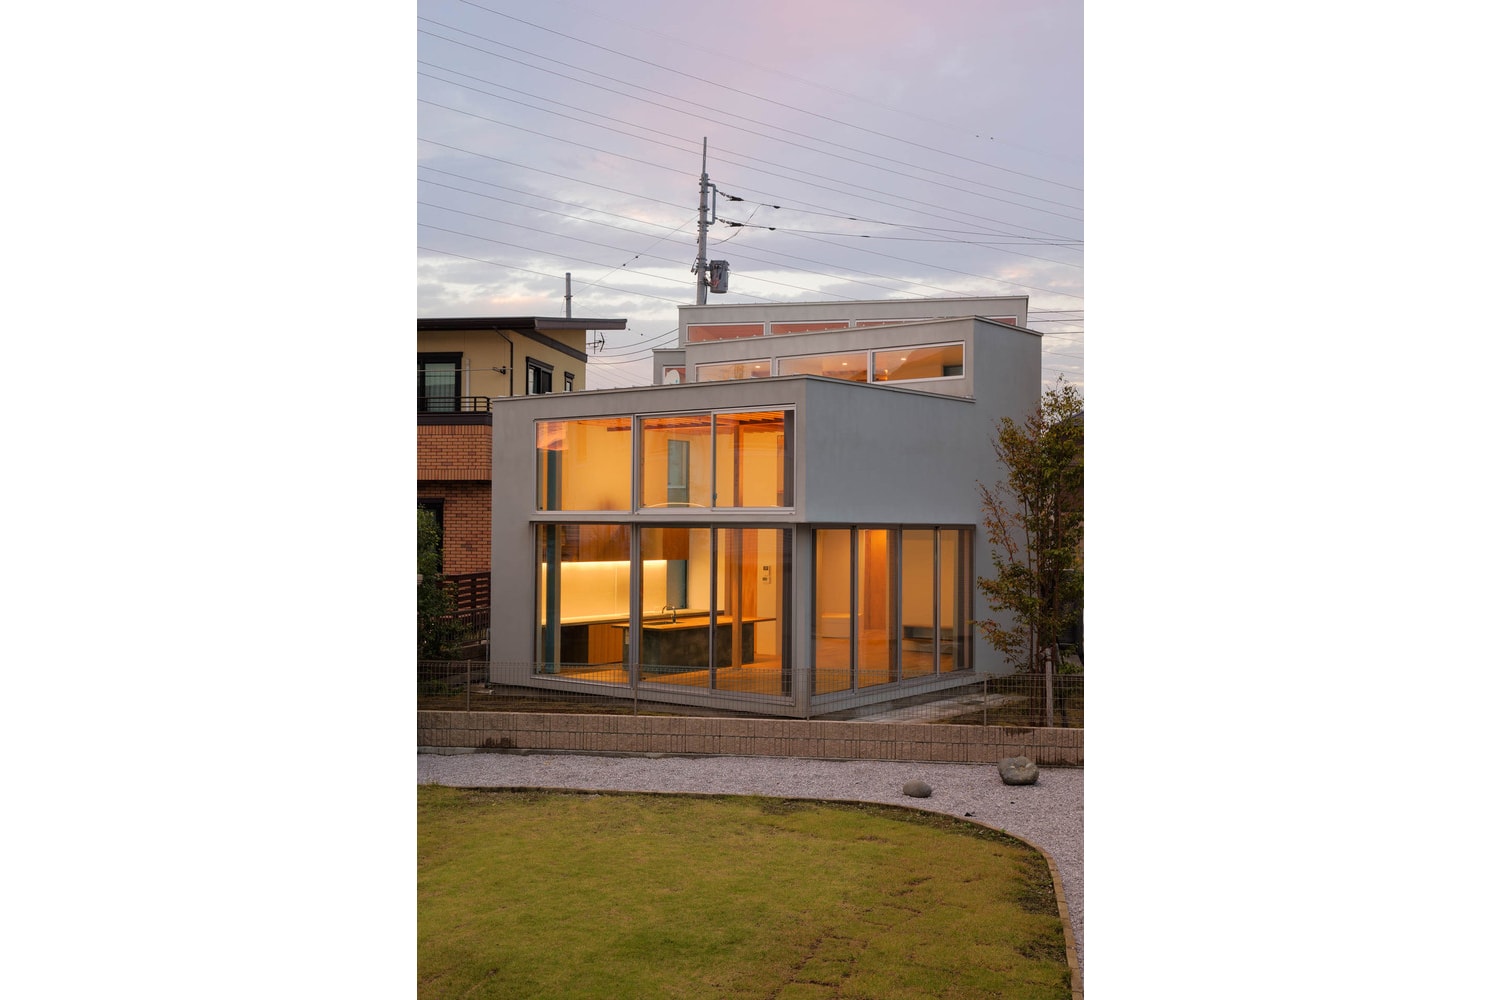 House K Shinta Hamada Architects Maebashi Japan LOW FAT structure Inc.